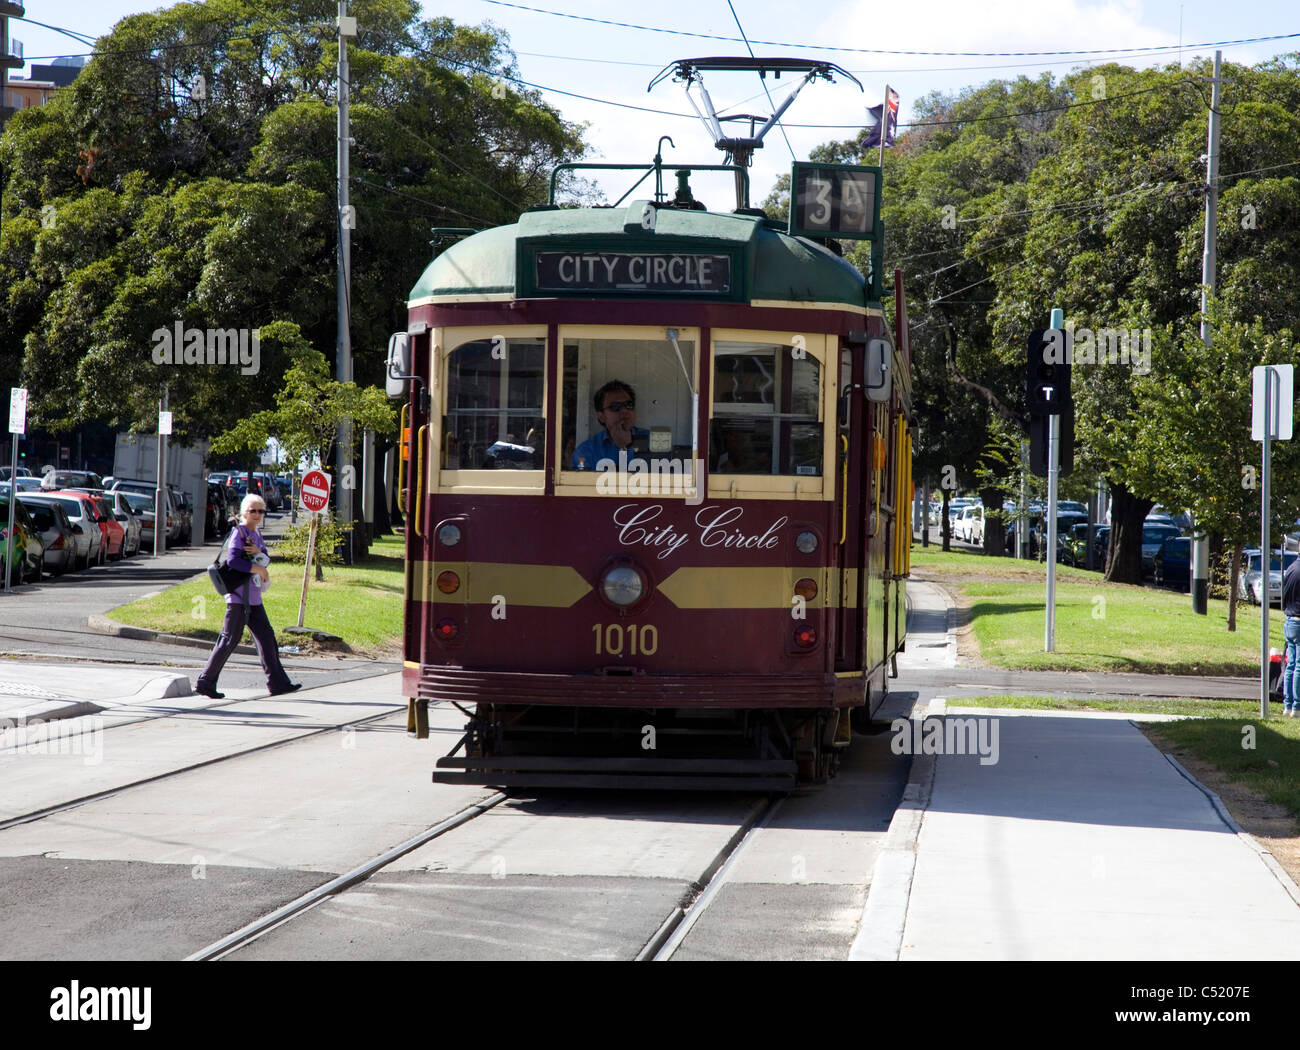 Libre de Melbourne City Circle Tram Banque D'Images